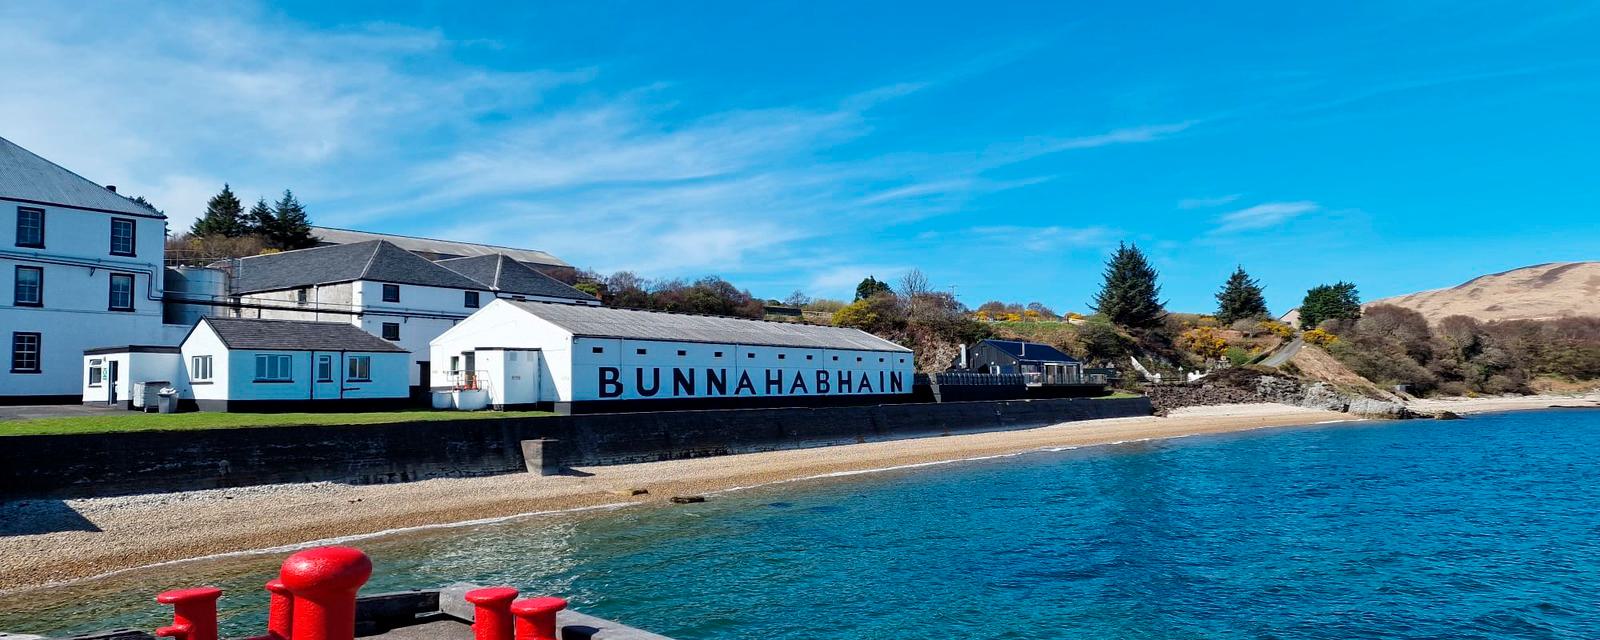 Bunnahabhain Distillery Visitor Centre